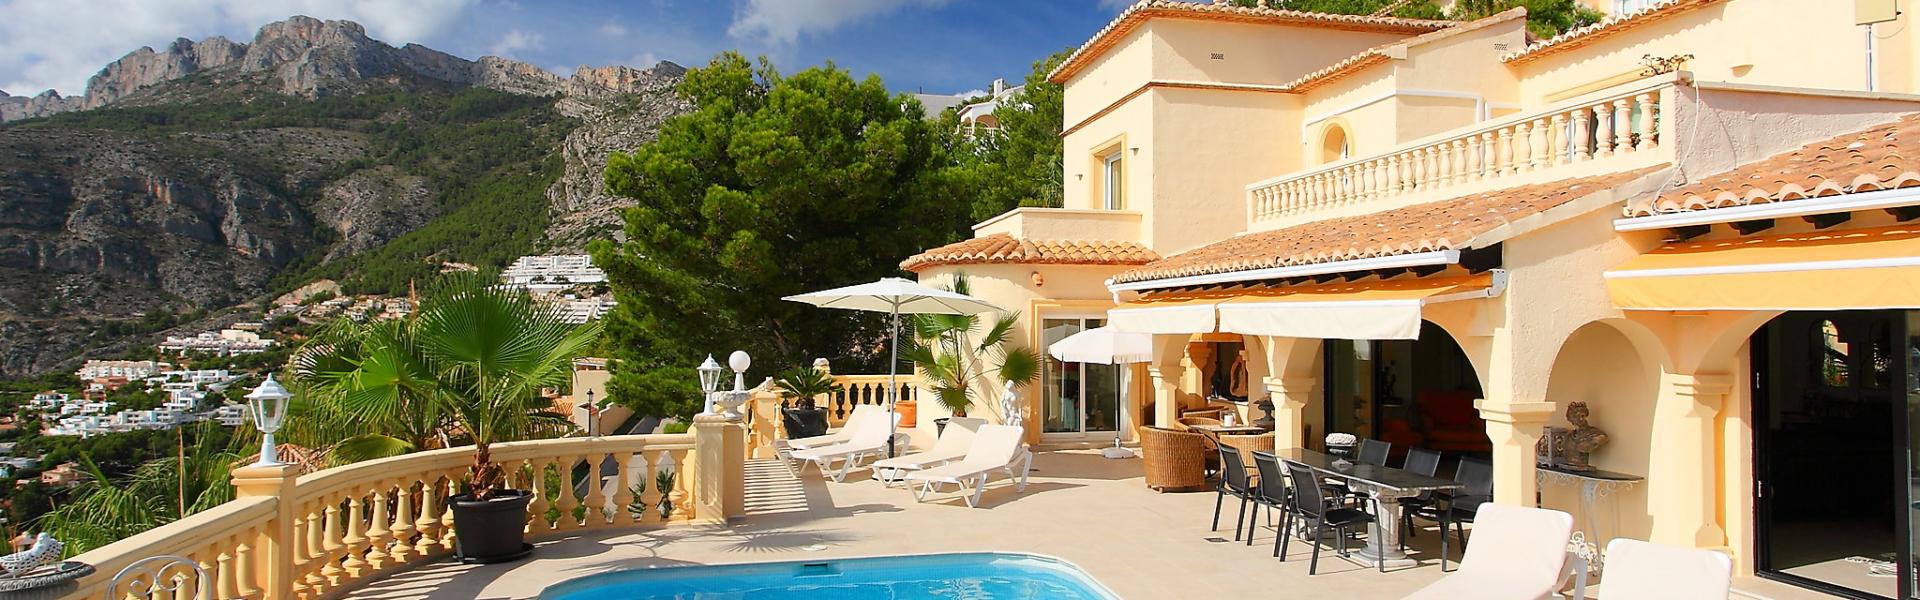 Ferienhaus mit Pool an der Italienischen Adriaküste - HomeToGo